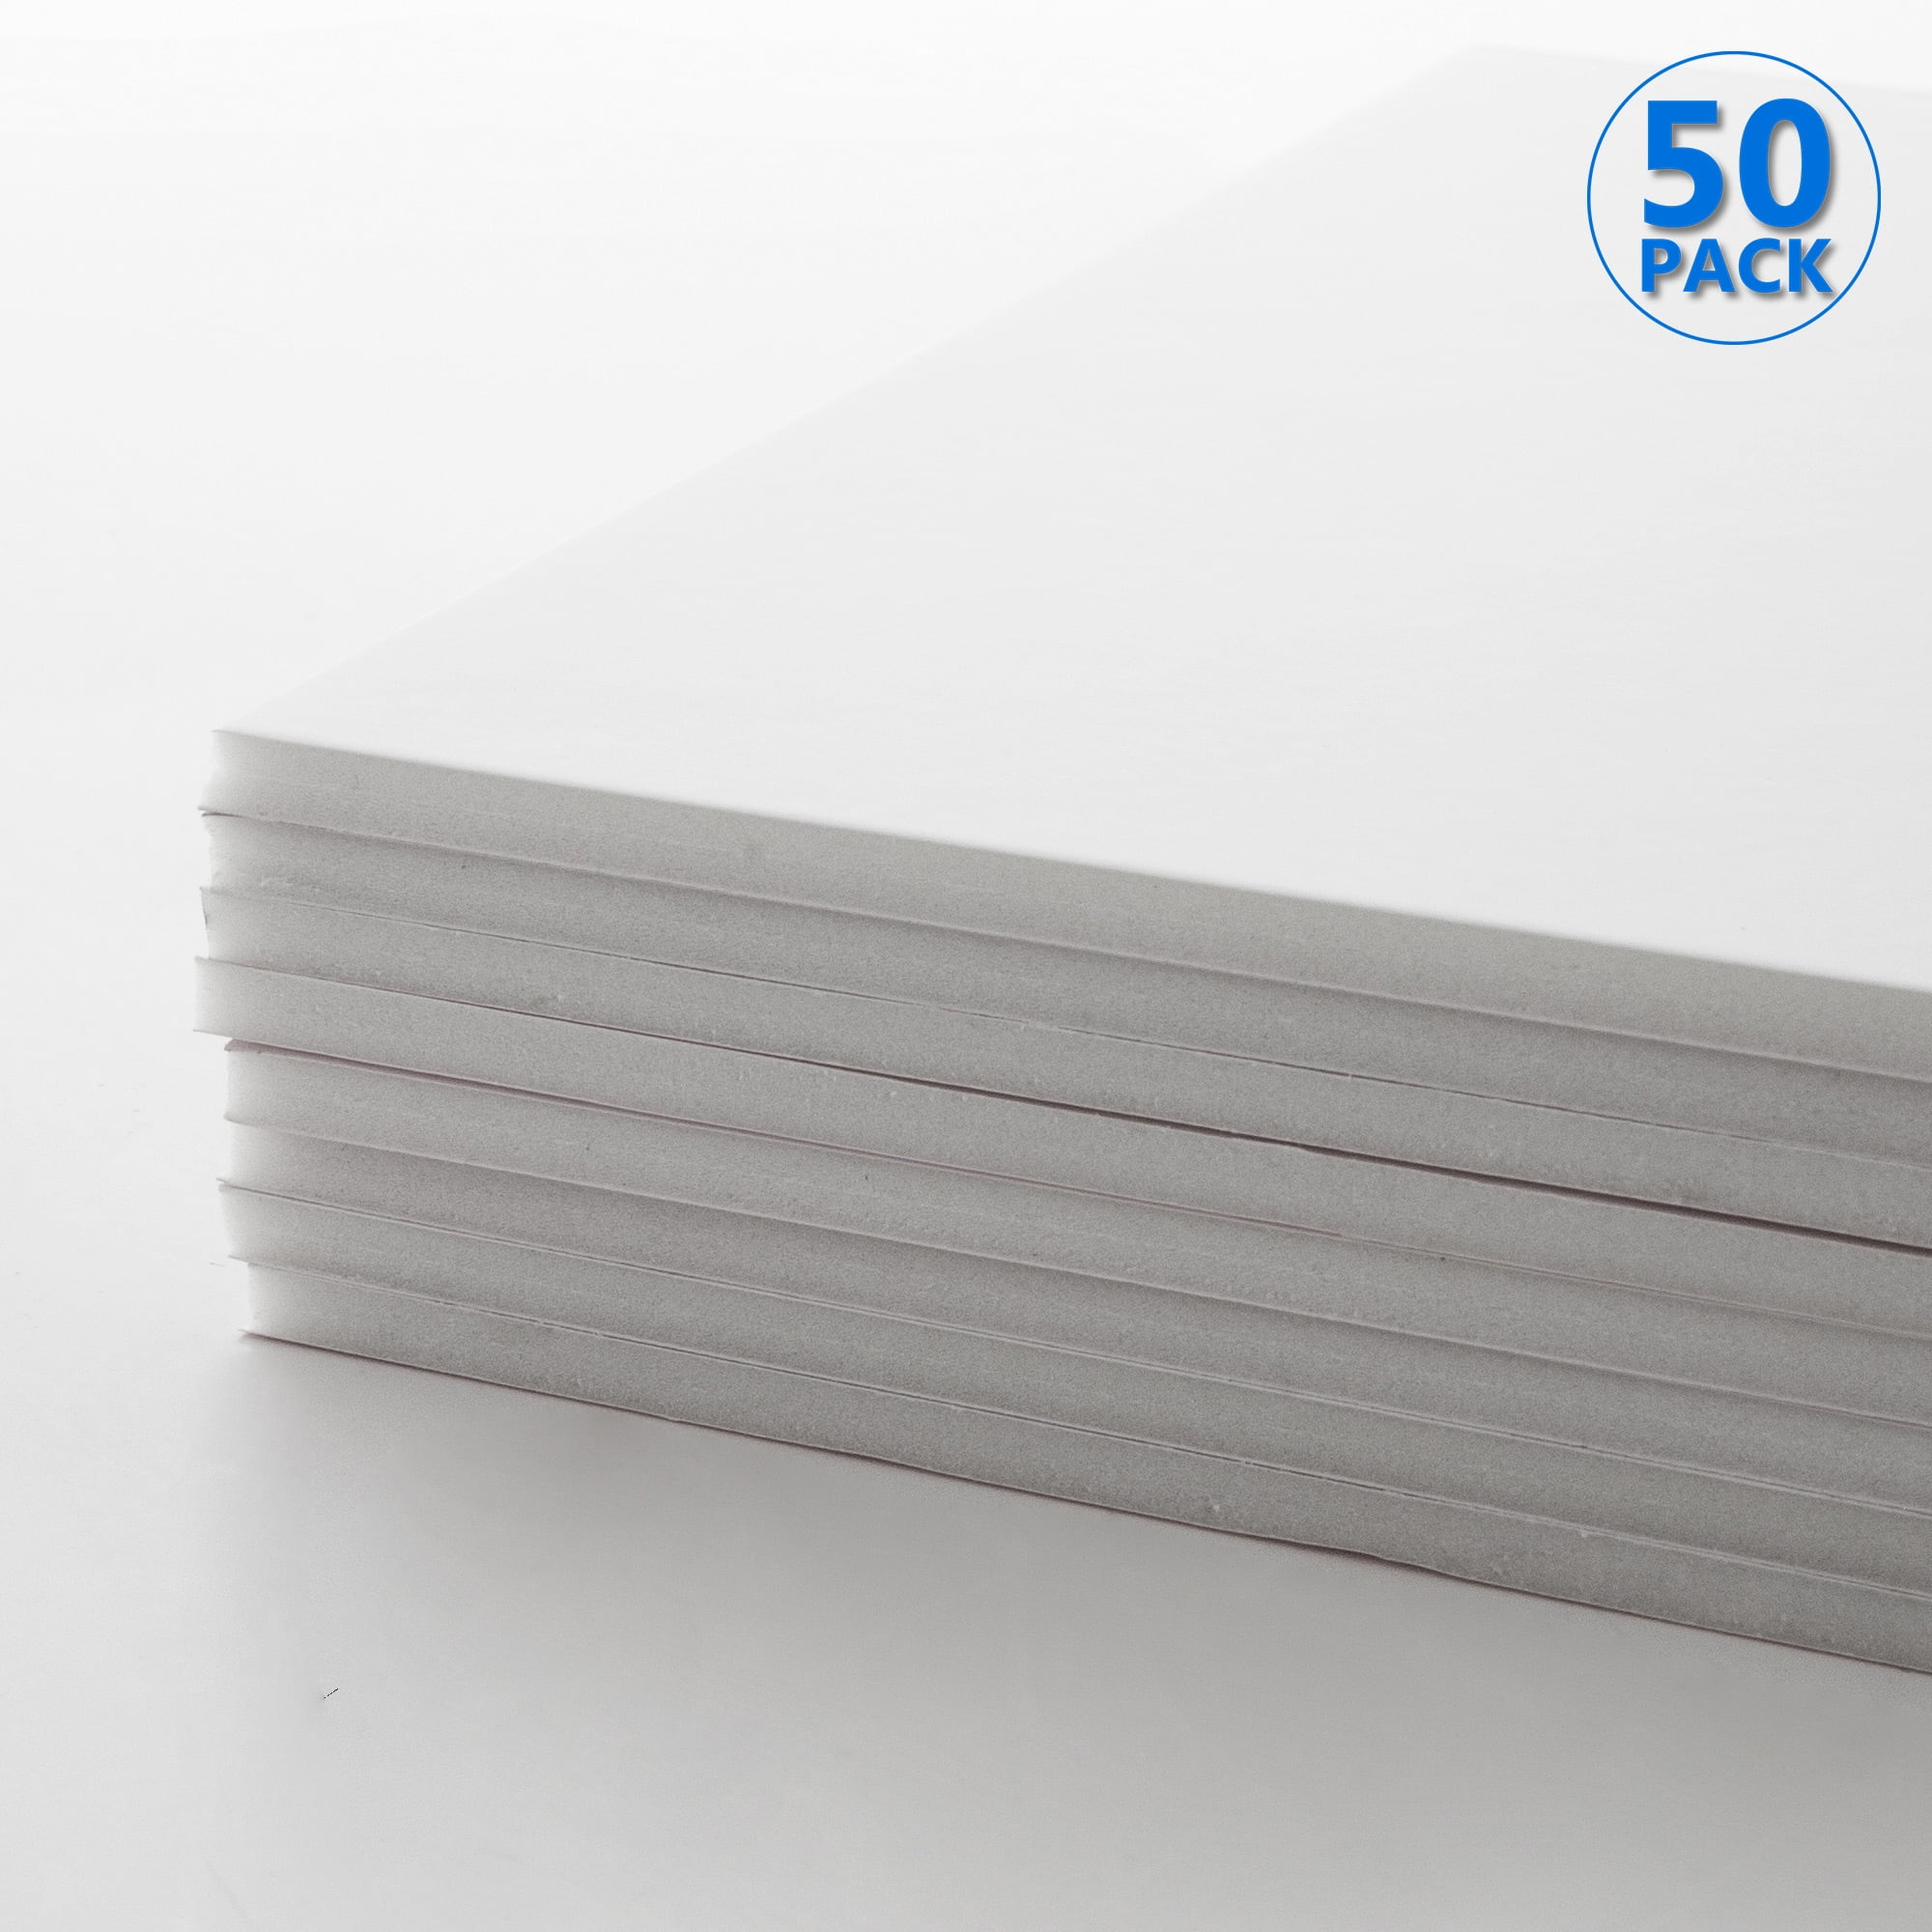 White Medium Tack Quick-Stick Foam Board - 20 x 30